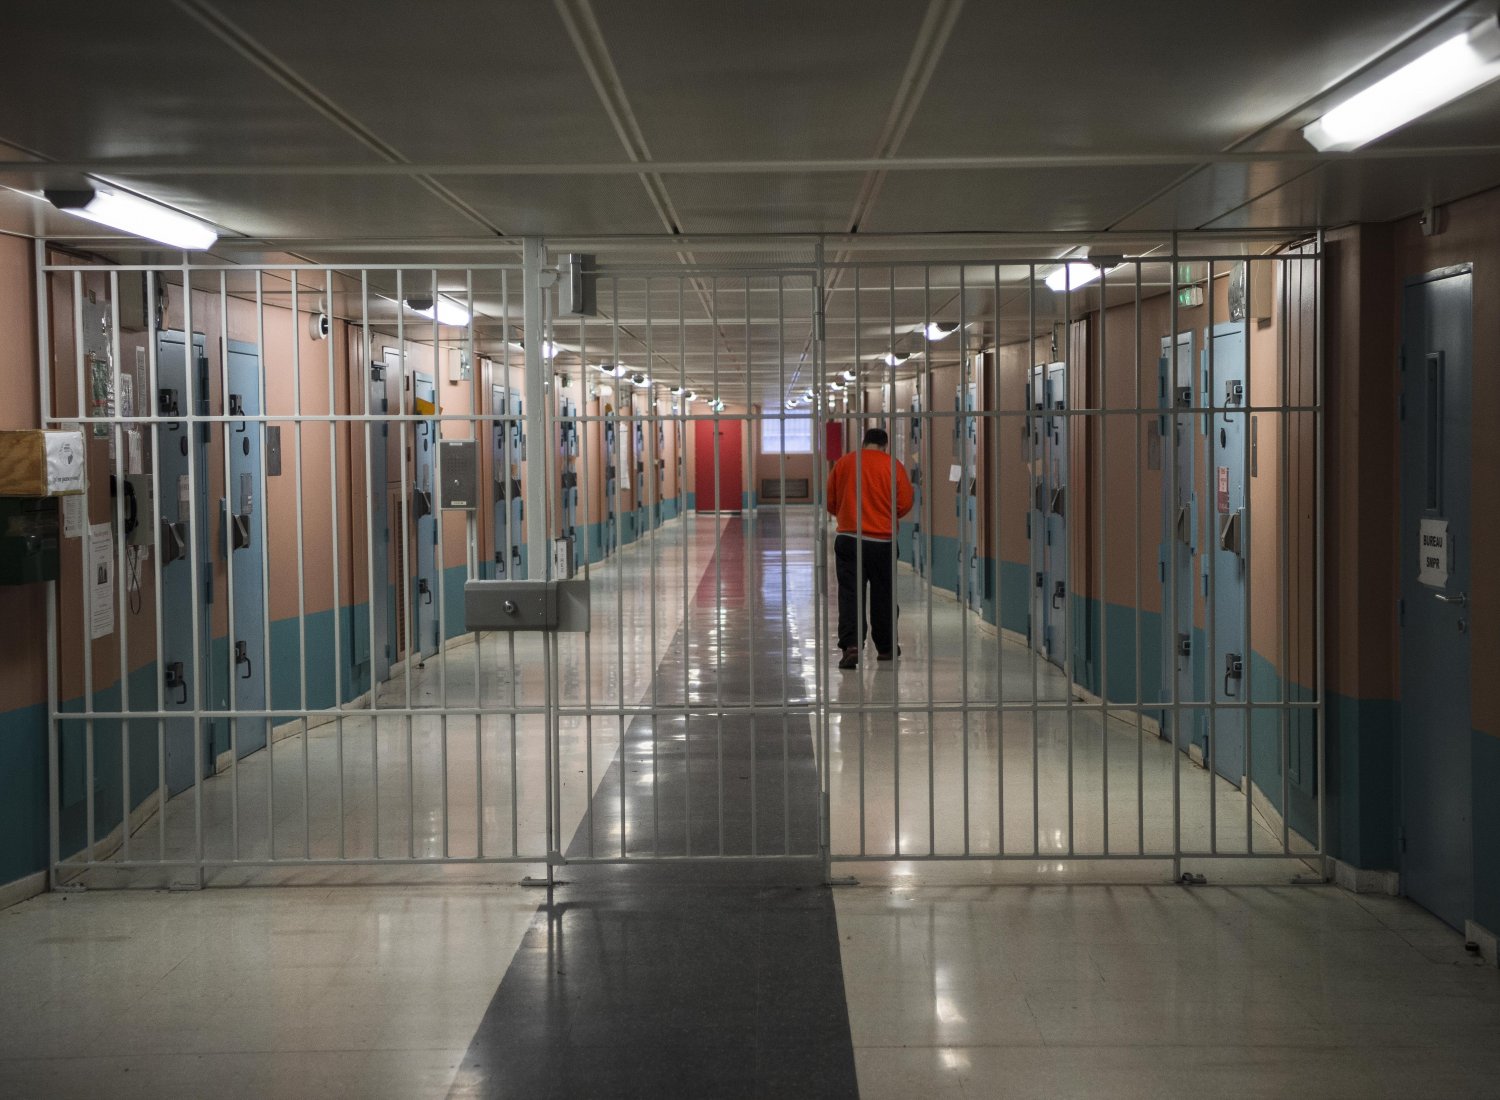 Image d'un couloir de prison avec une grille fermée empêchant le passage.